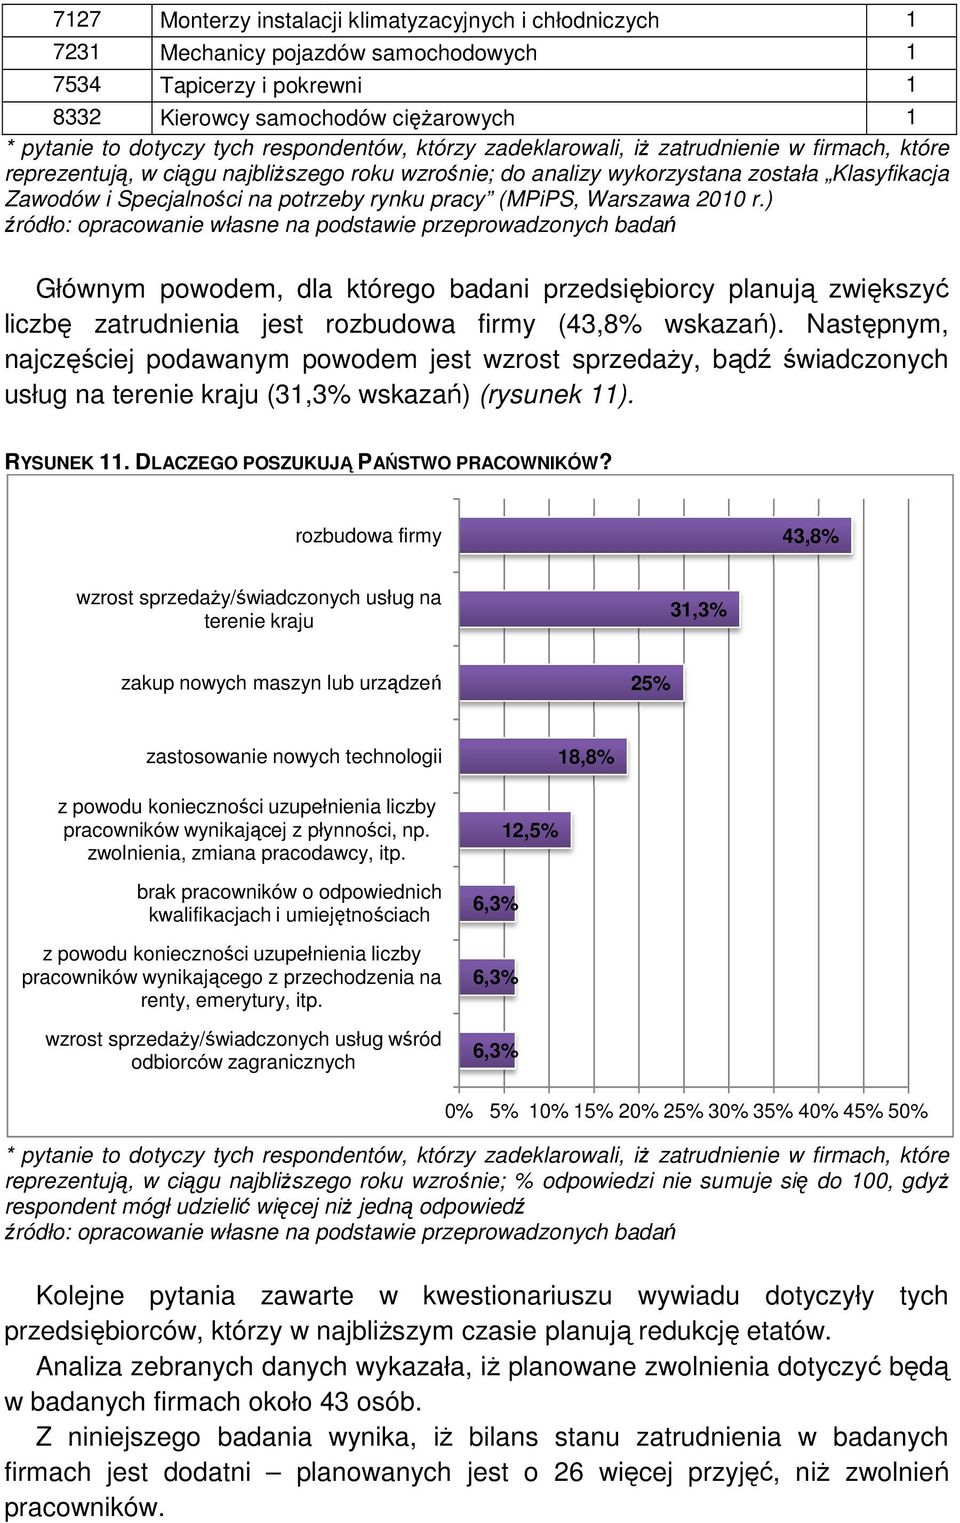 (MPiPS, Warszawa 200 r.) Głównym powodem, dla którego badani przedsiębiorcy planują zwiększyć liczbę zatrudnienia jest rozbudowa firmy (43,8% wskazań).